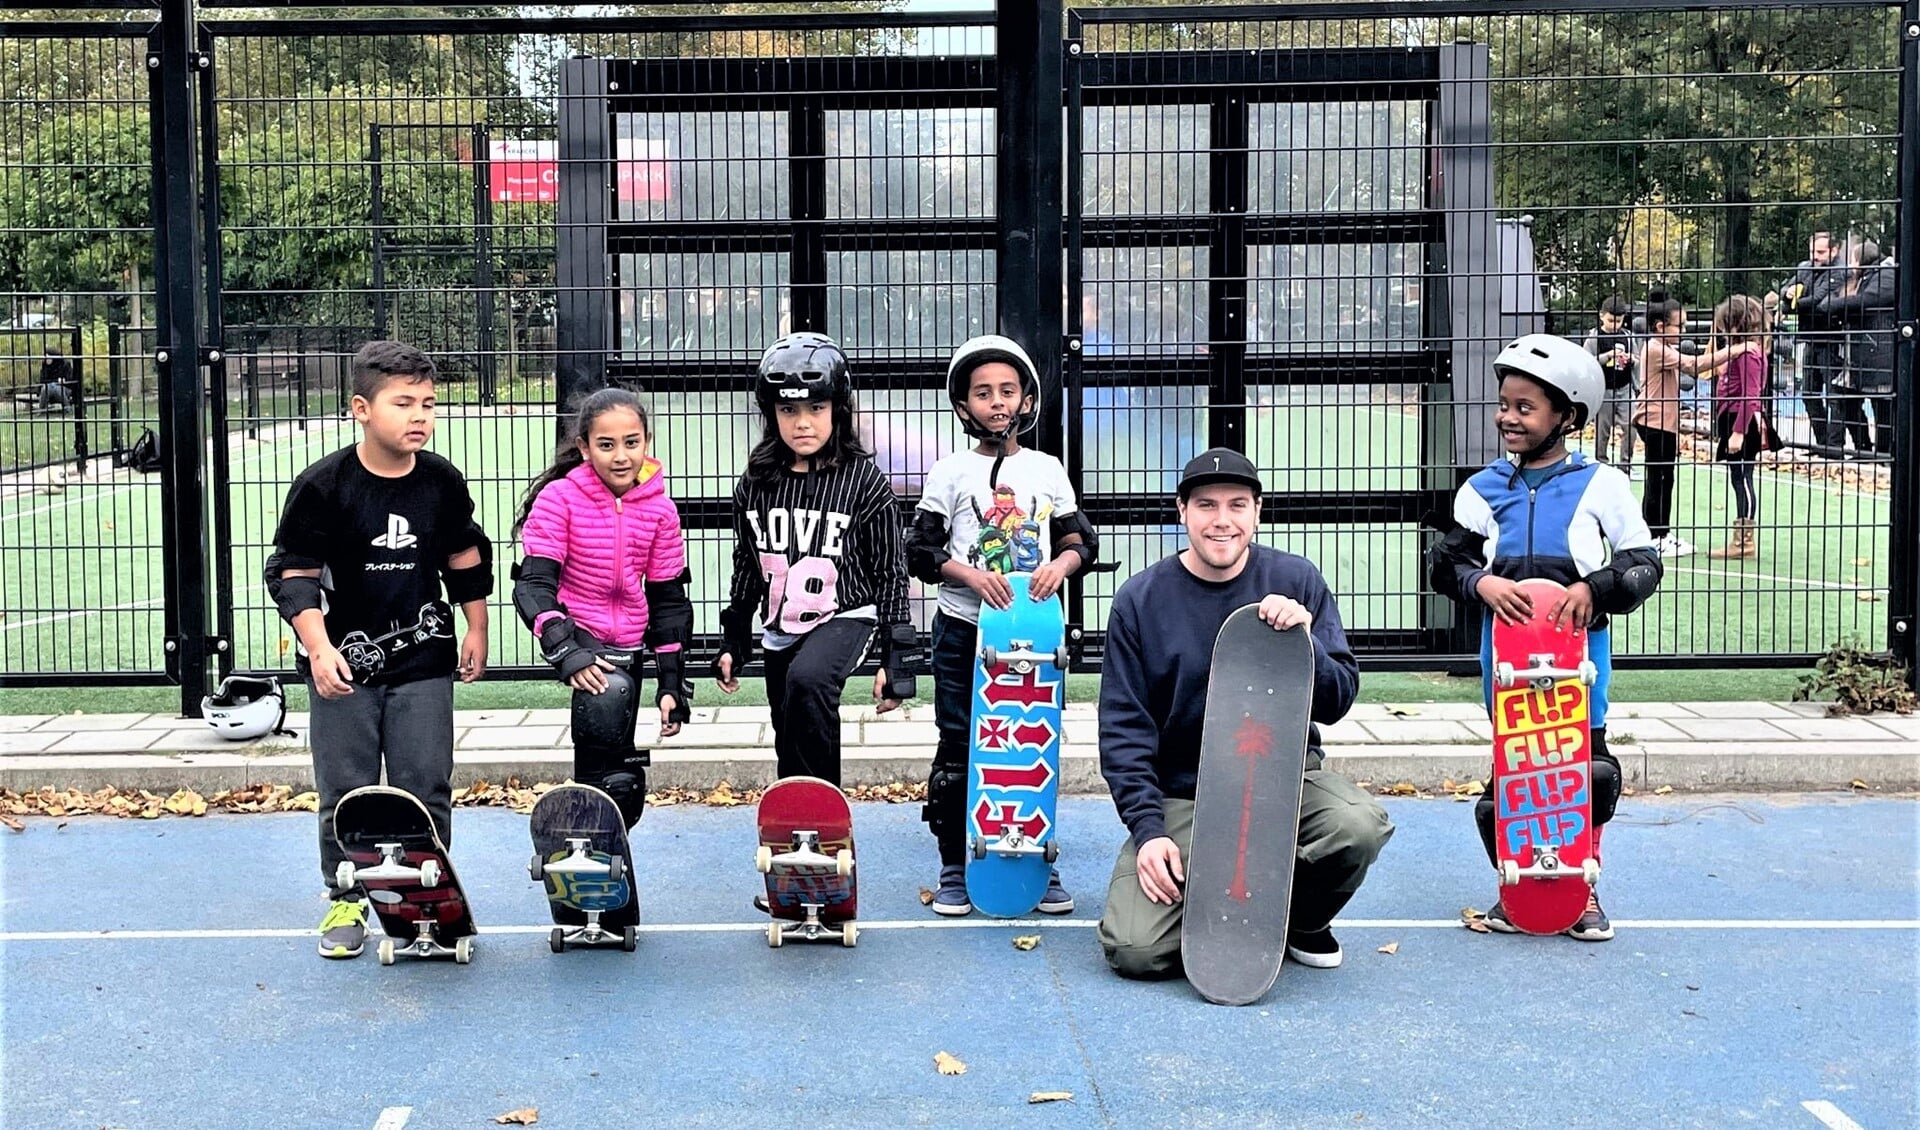  Tijdens de skateboardlessen leren de kinderen verschillenden dingen zoals hun angsten overwinnen en doorzetten, ook als iets niet meteen lukt (foto: SenW). 